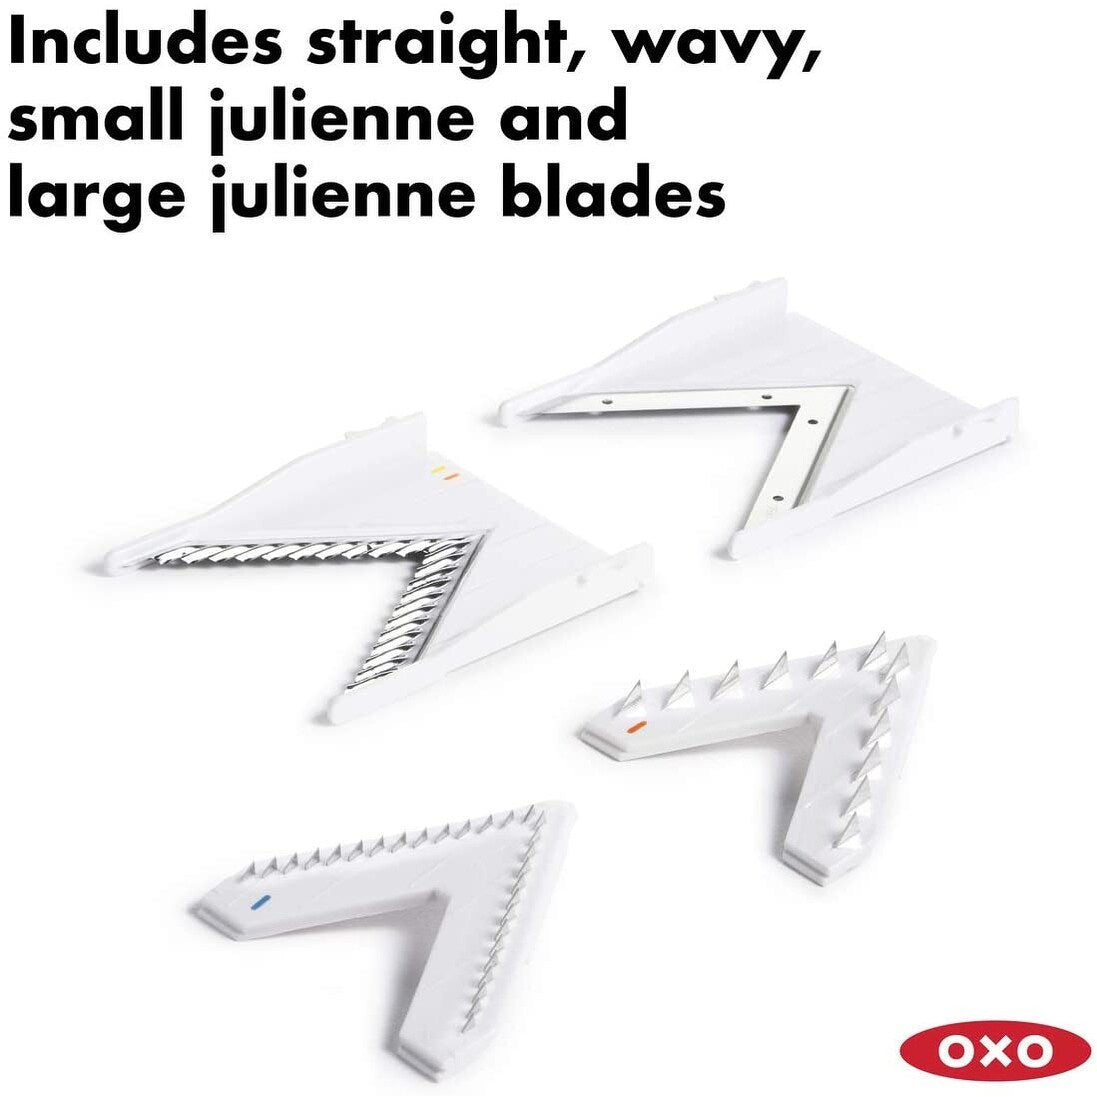 OXO Good Grips V-Blade Stainless Steel Mandoline Slicer, White